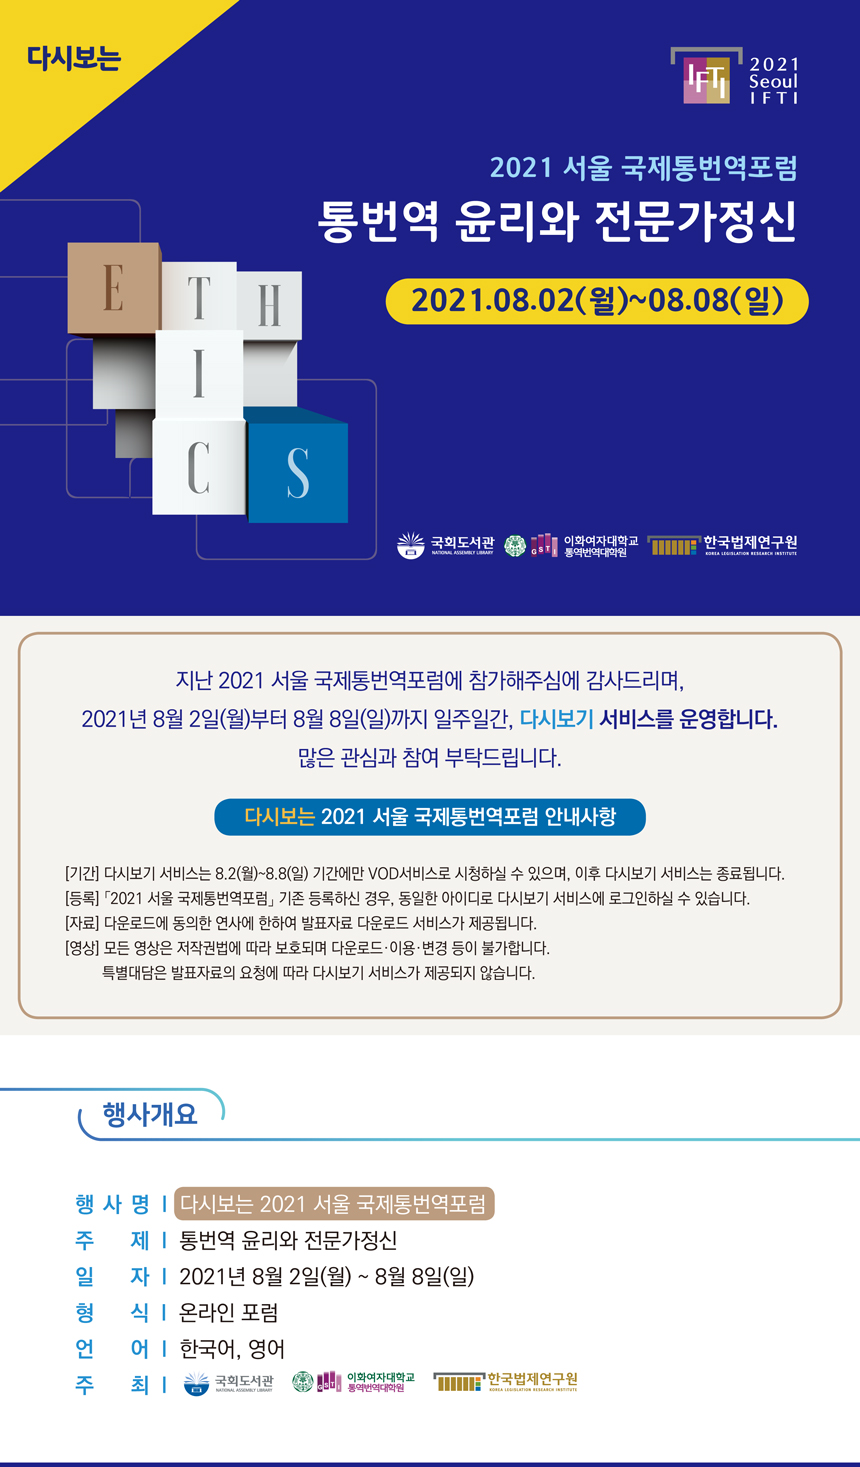 AGAIN 2021 Seoul IFTI 1